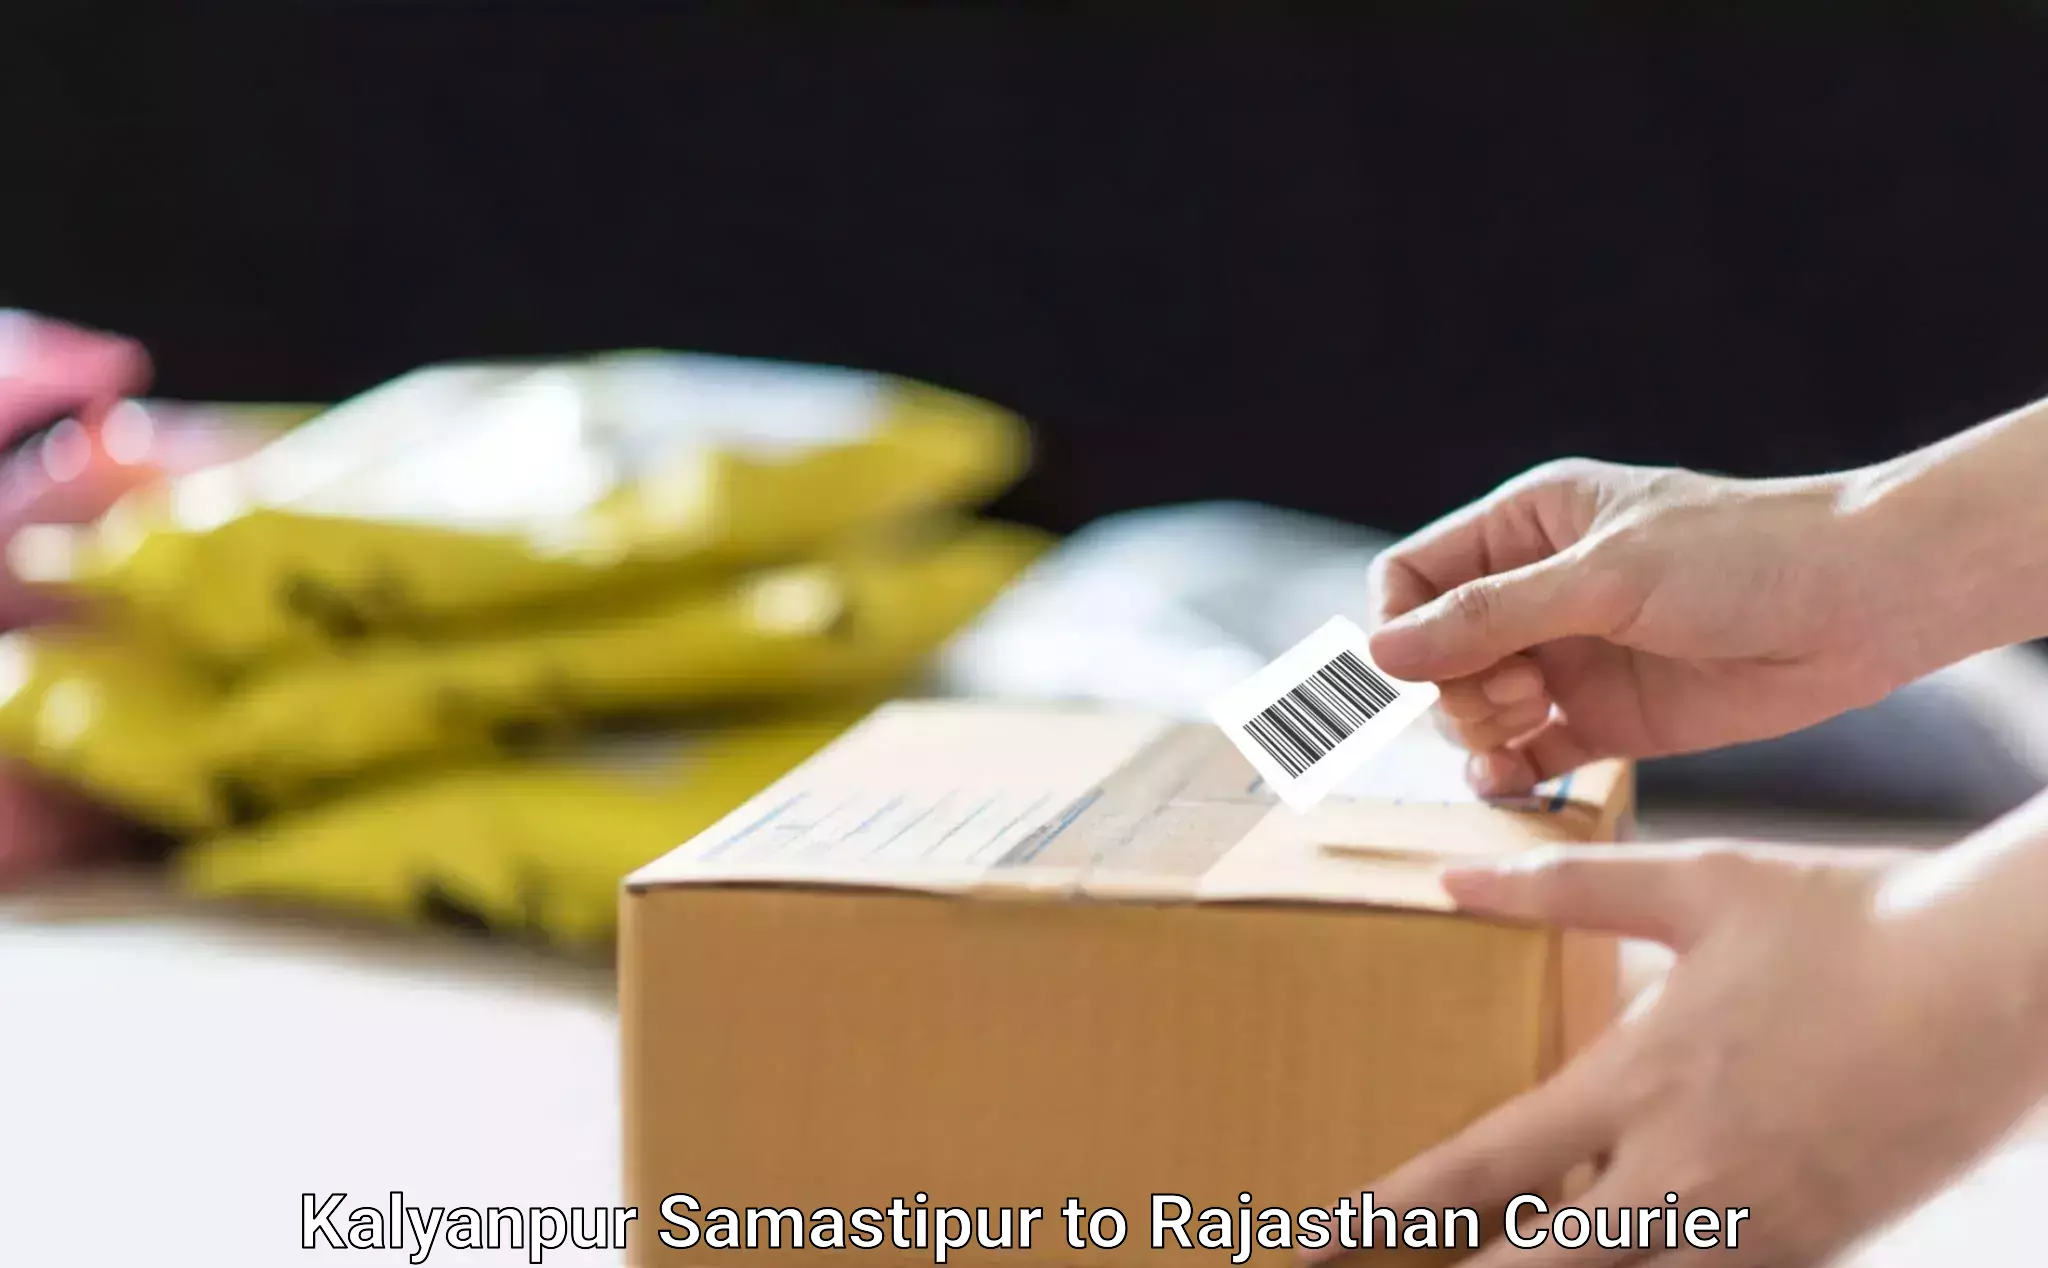 Furniture moving experts Kalyanpur Samastipur to Behror